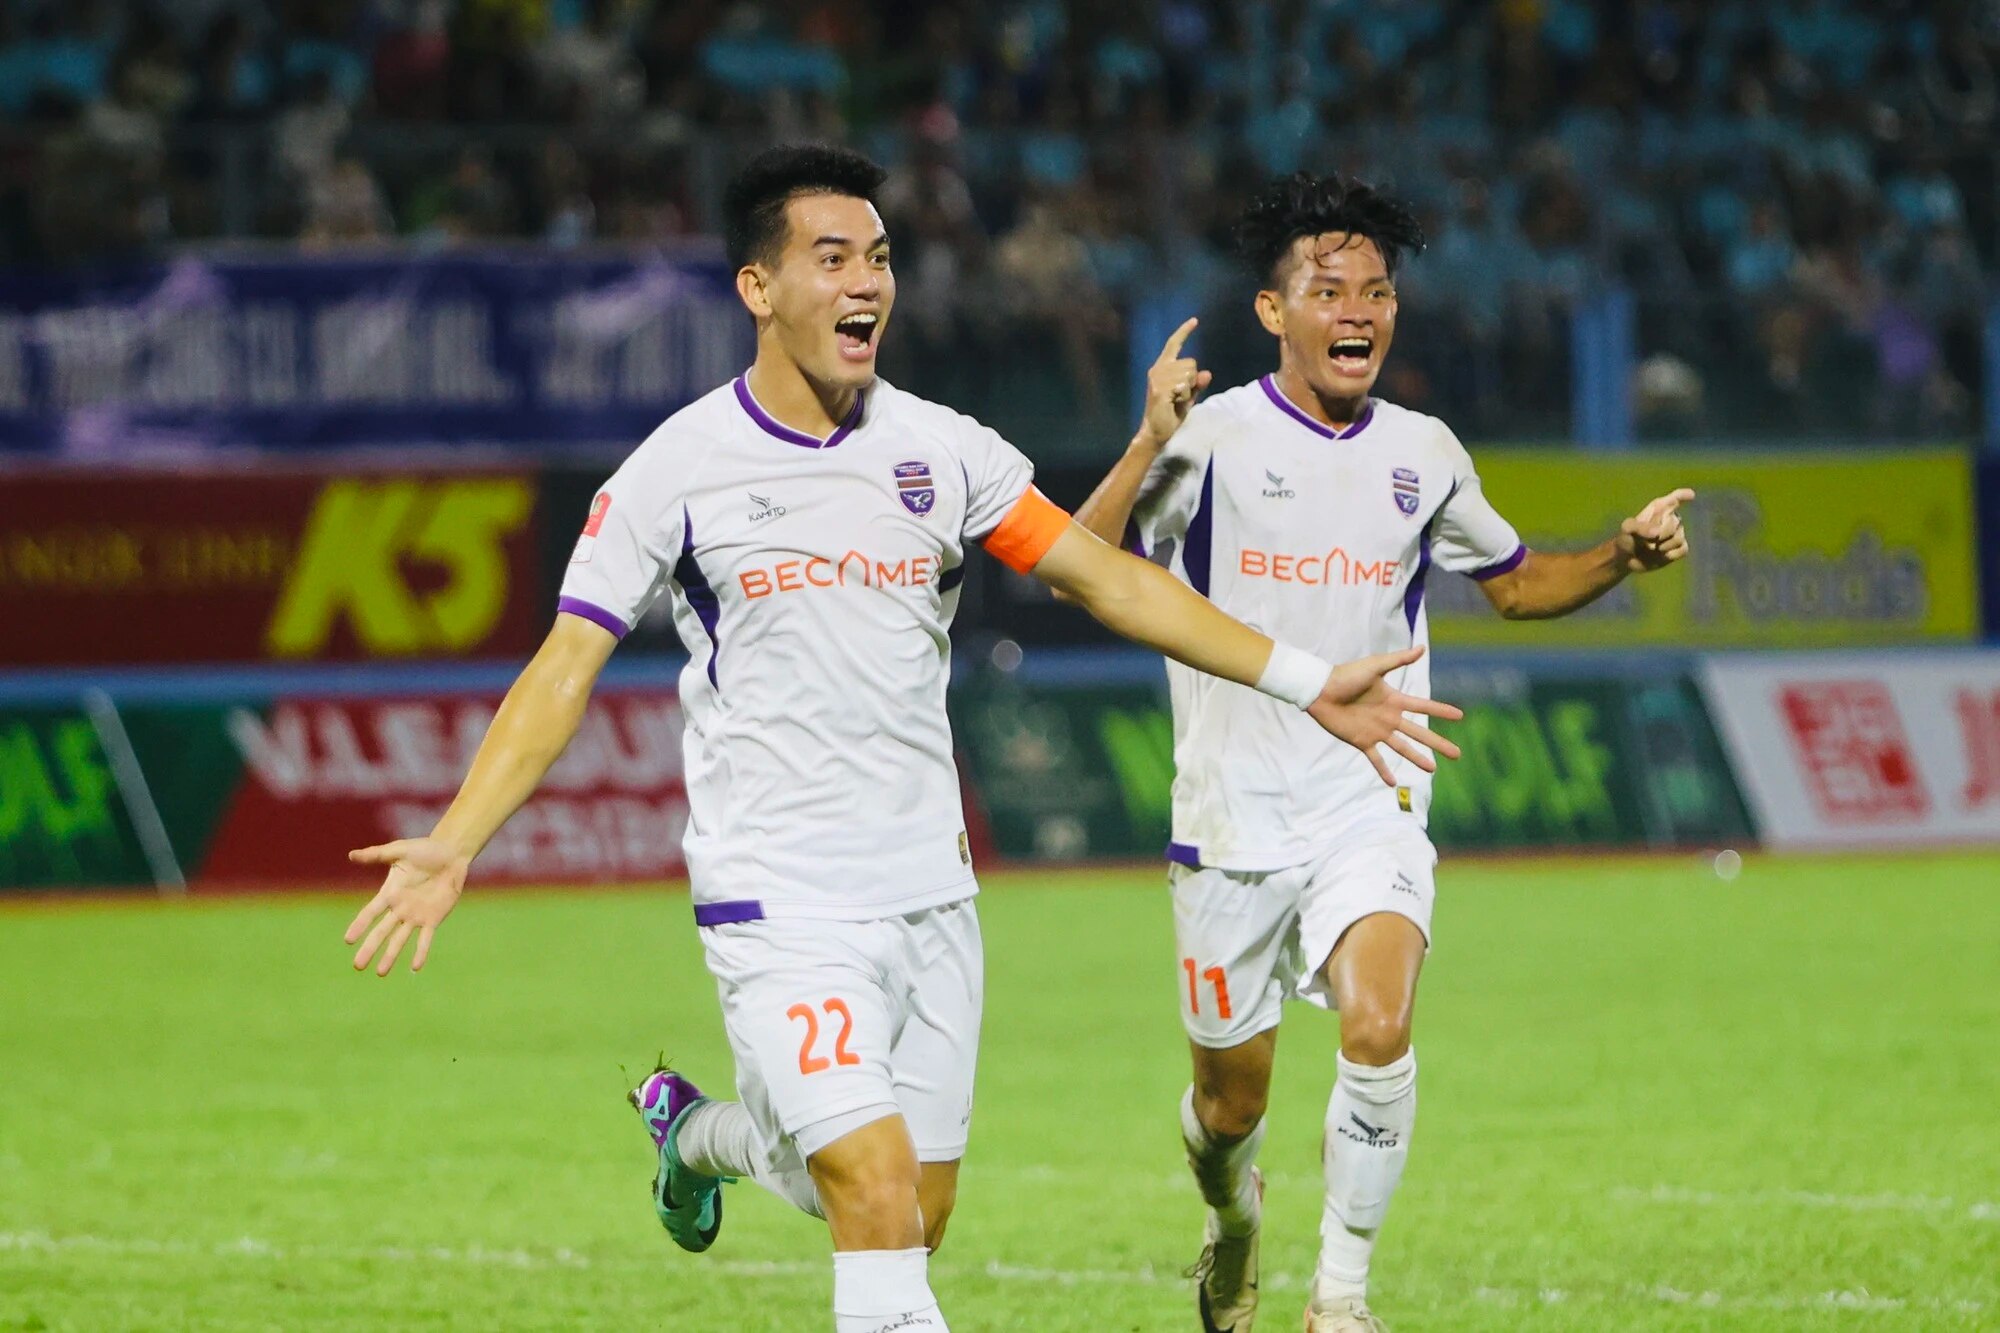 Tiến Linh có 1 bàn thắng và 1 kiến tạo trong chiến thắng 2-0 trước CLB Khánh Hòa